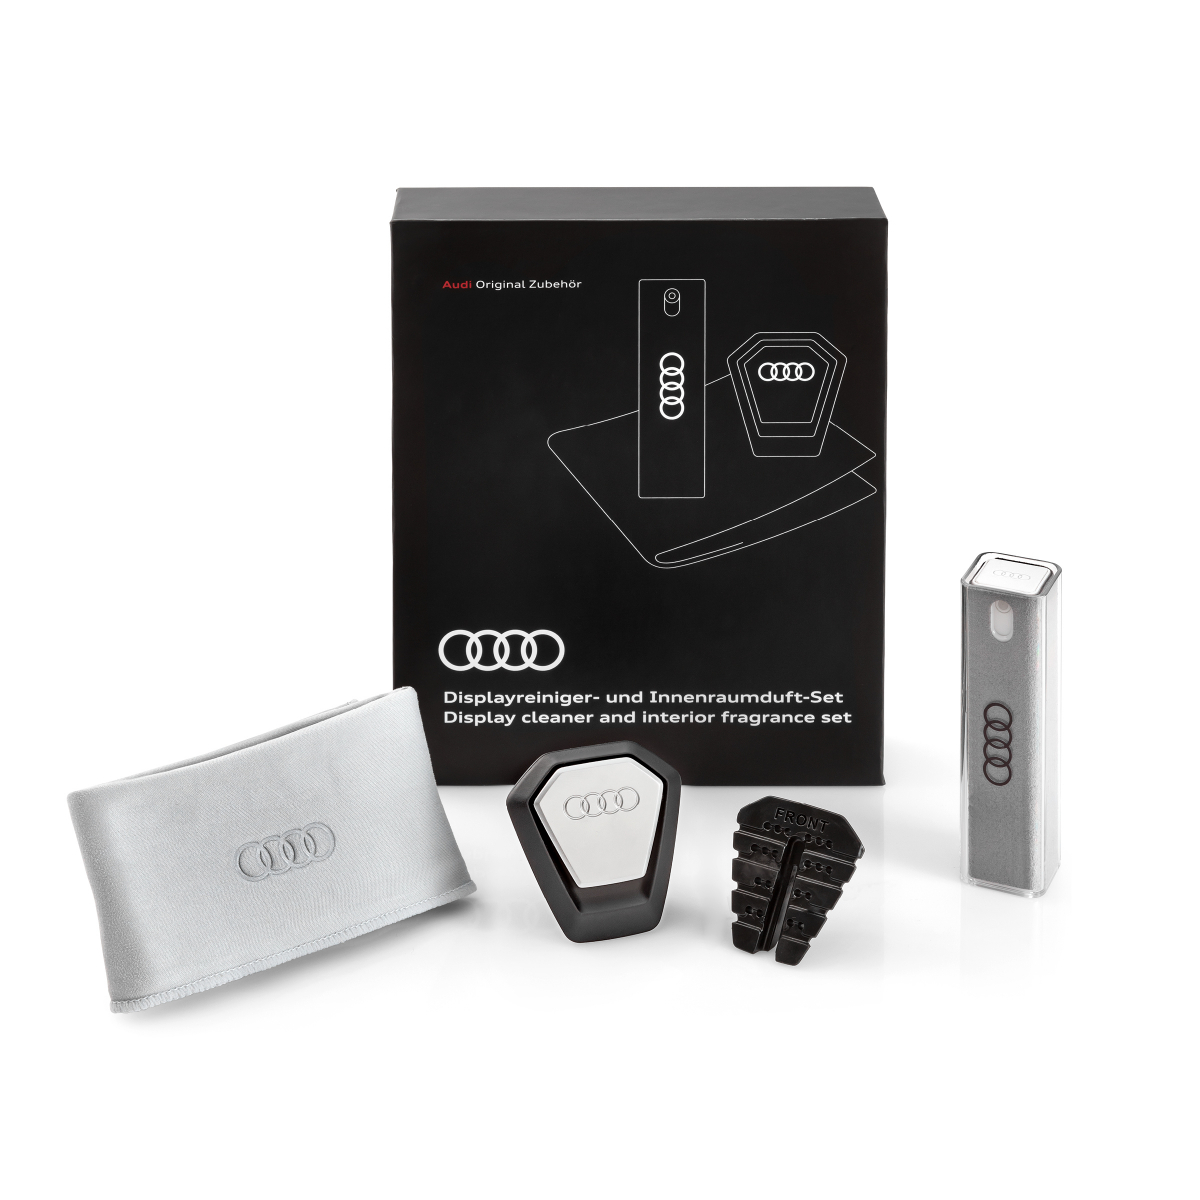 Audi gift Box - Accessori per la pulizia del display e profumatore -  Navistore